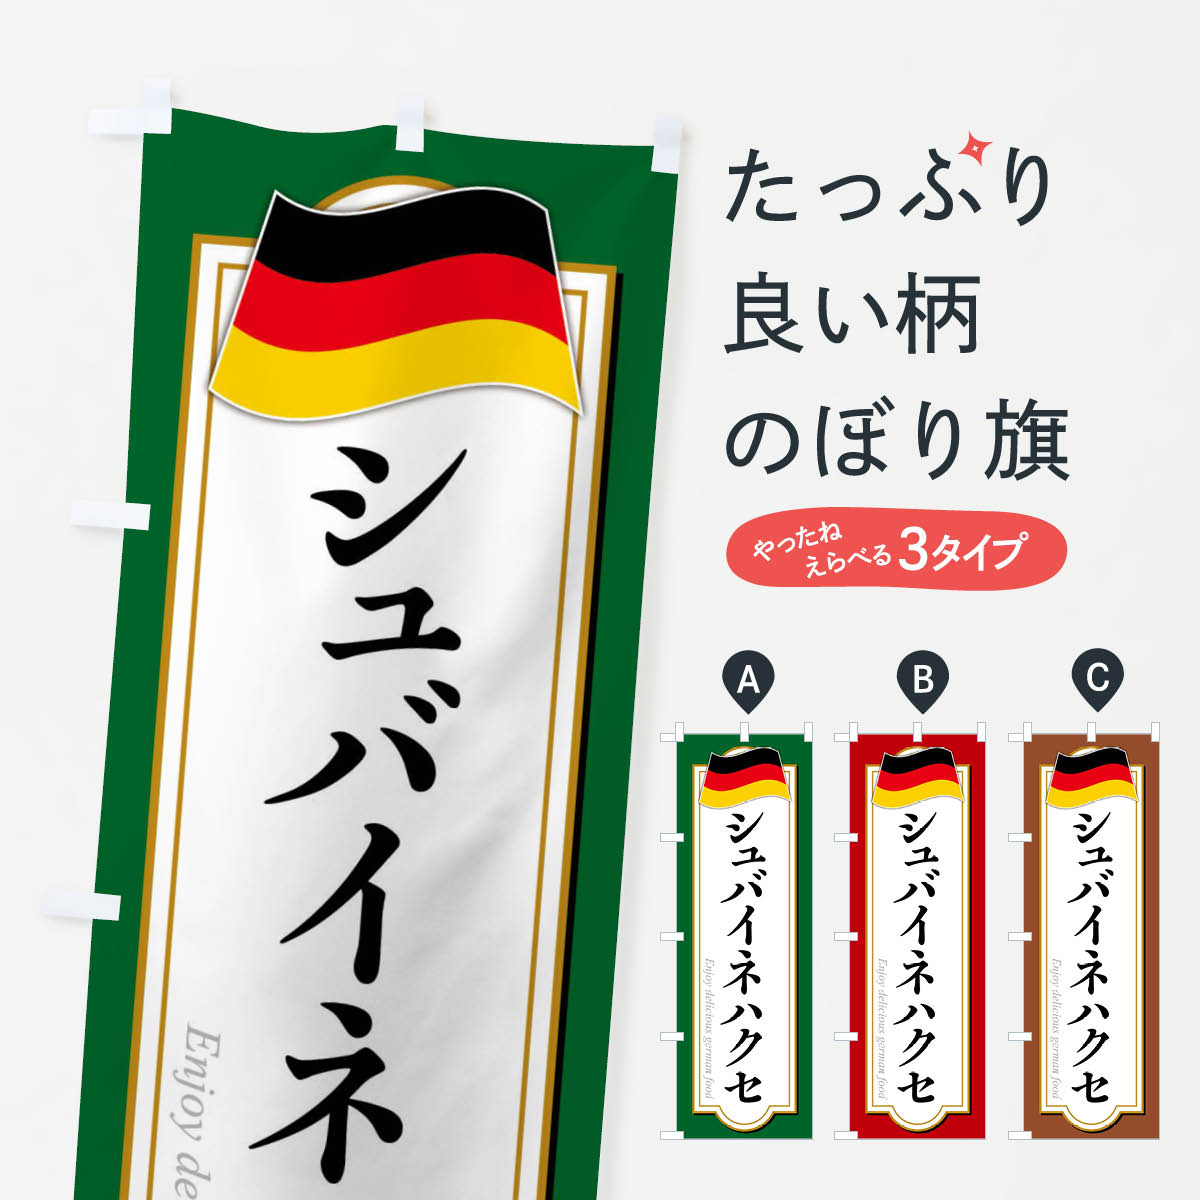 【全国送料360円】 のぼり旗 シュバイネハクセ・ドイツ料理のぼり FX73 グッズプロ